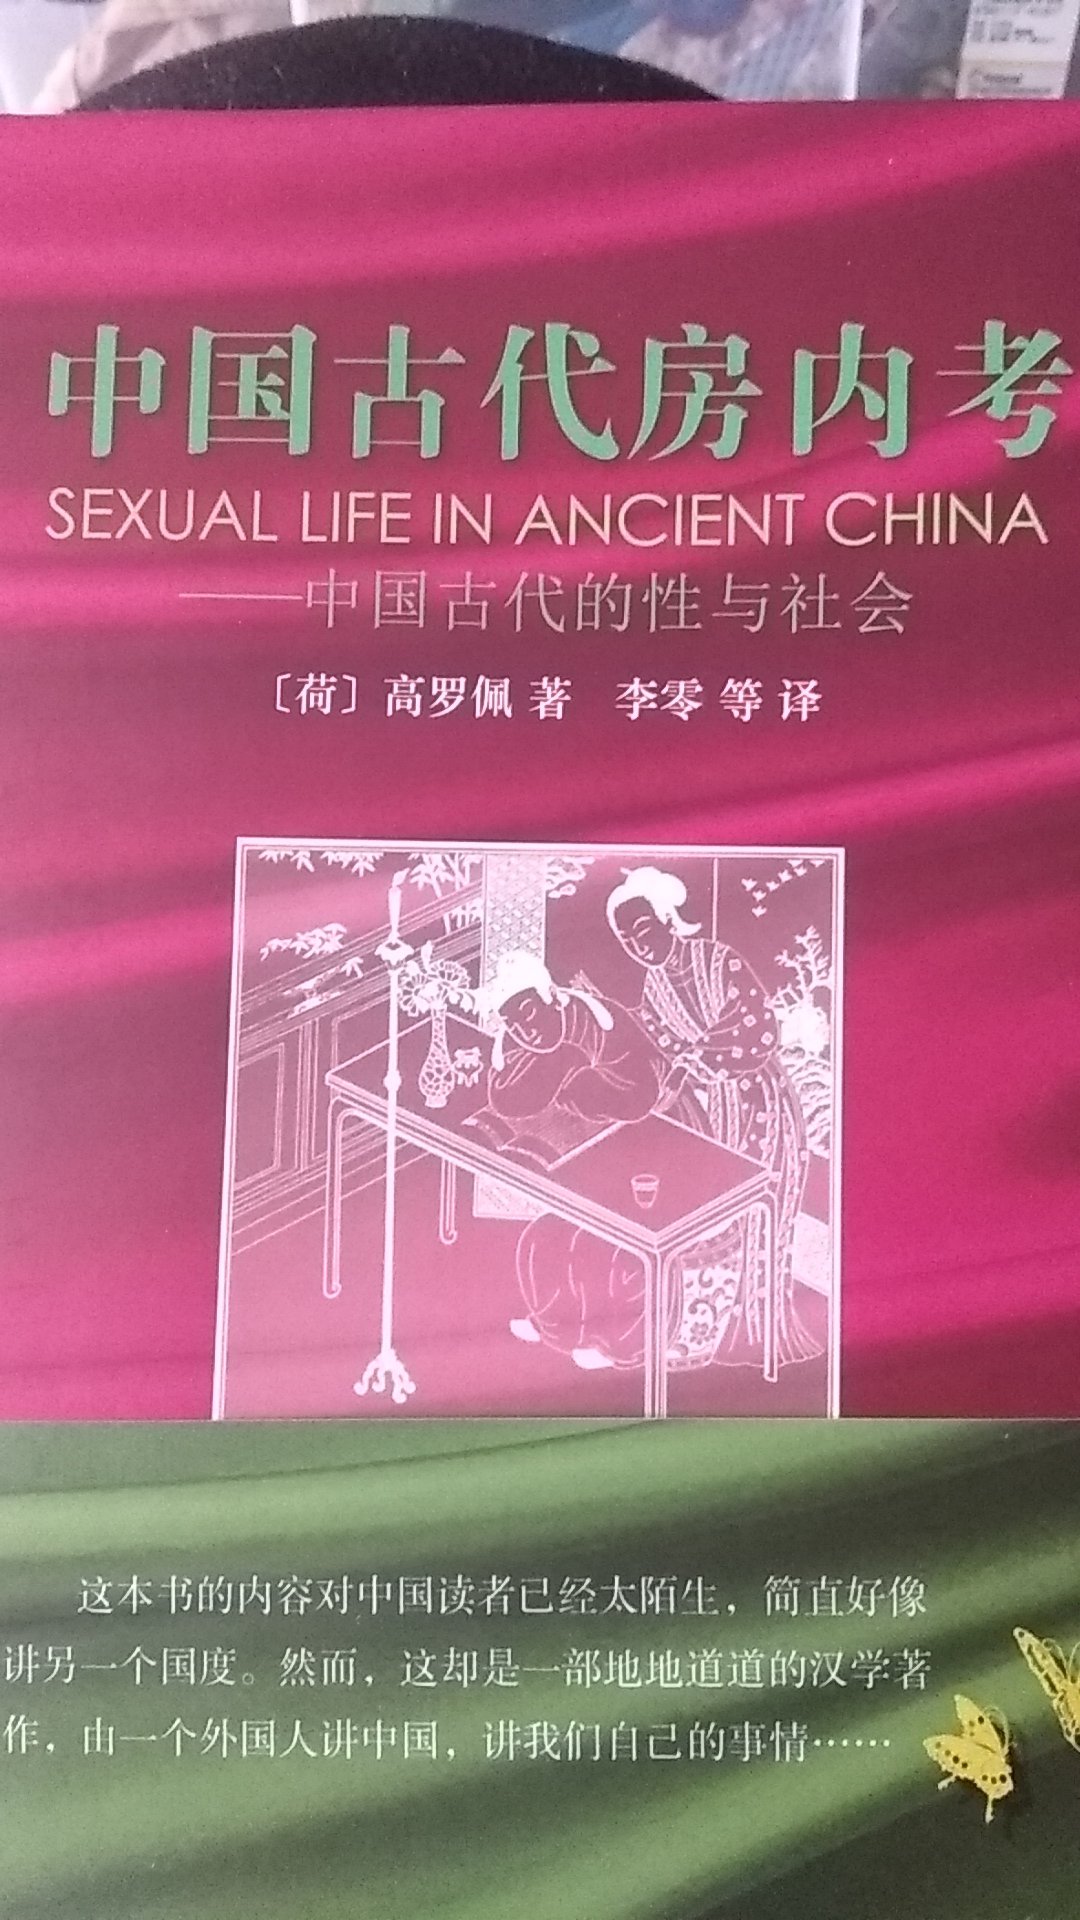 外界认为古代中国人性习俗堕落反常的流俗之见是完全错误的。正如人们可以想见的那样，像中国人这样有高度文化教养和长于思考的民族，其实从很早就很重视性问题。他们对性问题的观察体现在“房中书”，即指导一家之长如何调谐夫妇的书籍当中。这些书在两千年前就已存在，并且直到13世纪前后仍被广泛传习。此后儒家禁欲主义逐渐限制这类文献的流传。1644年清建立后，这种受政治和感情因素影响而变本加厉的禁欲主义，终于导致上述对性问题的讳莫如深。从那以后，这种讳莫如深一直困扰着中国人。清代学者断言，这种讳莫如深始终存在，并且男女大防在两千年前就已盛行。